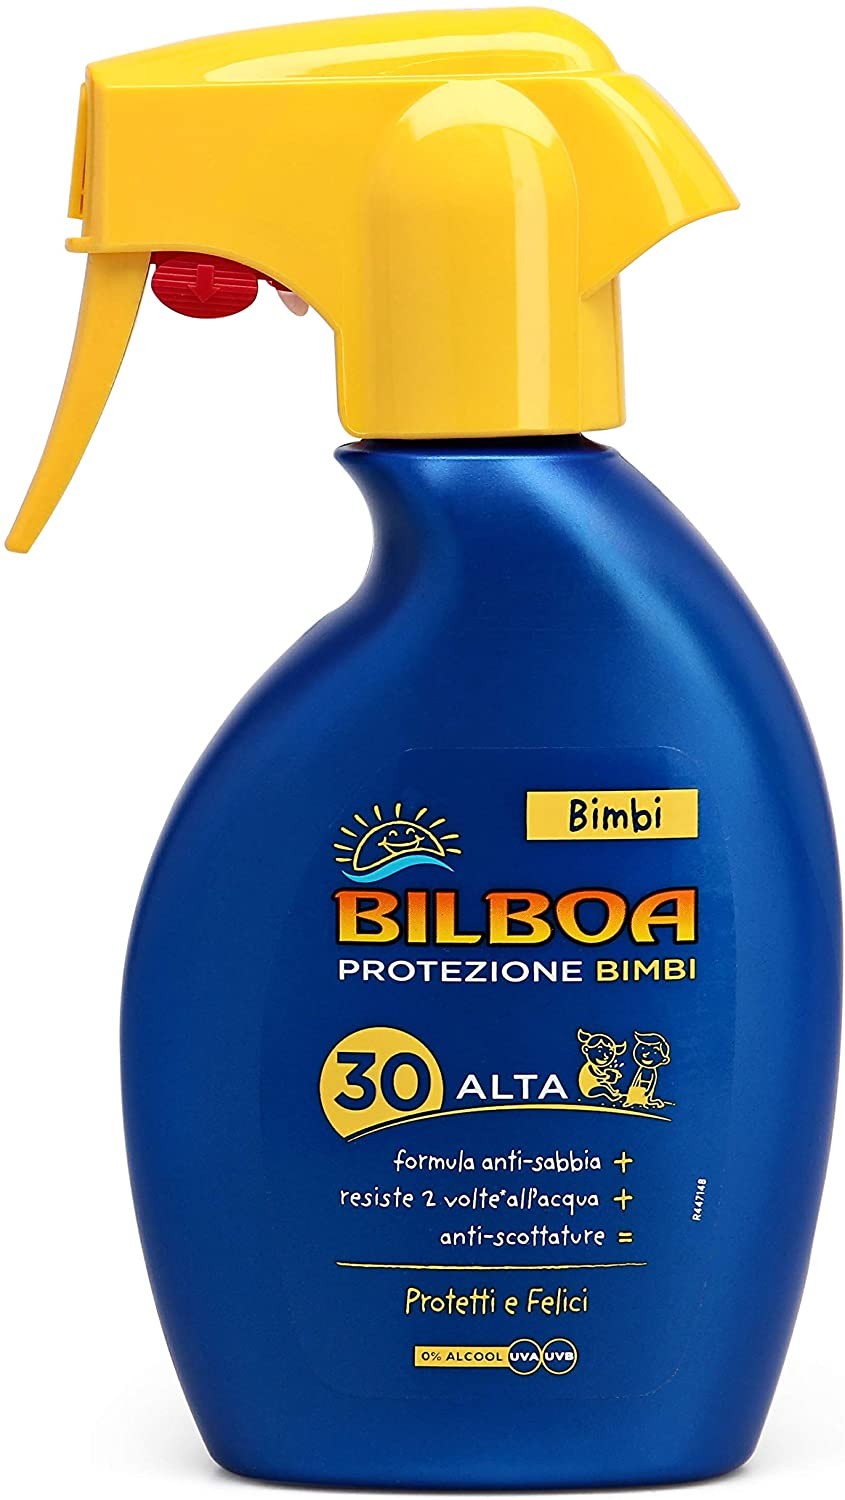 Bilboa Bimbi Trigger Solare Bambini con Protezione SPF 30, Spray Senza Alcool, Formula Anti Sabbia, Resistente all'Acqua e Anti